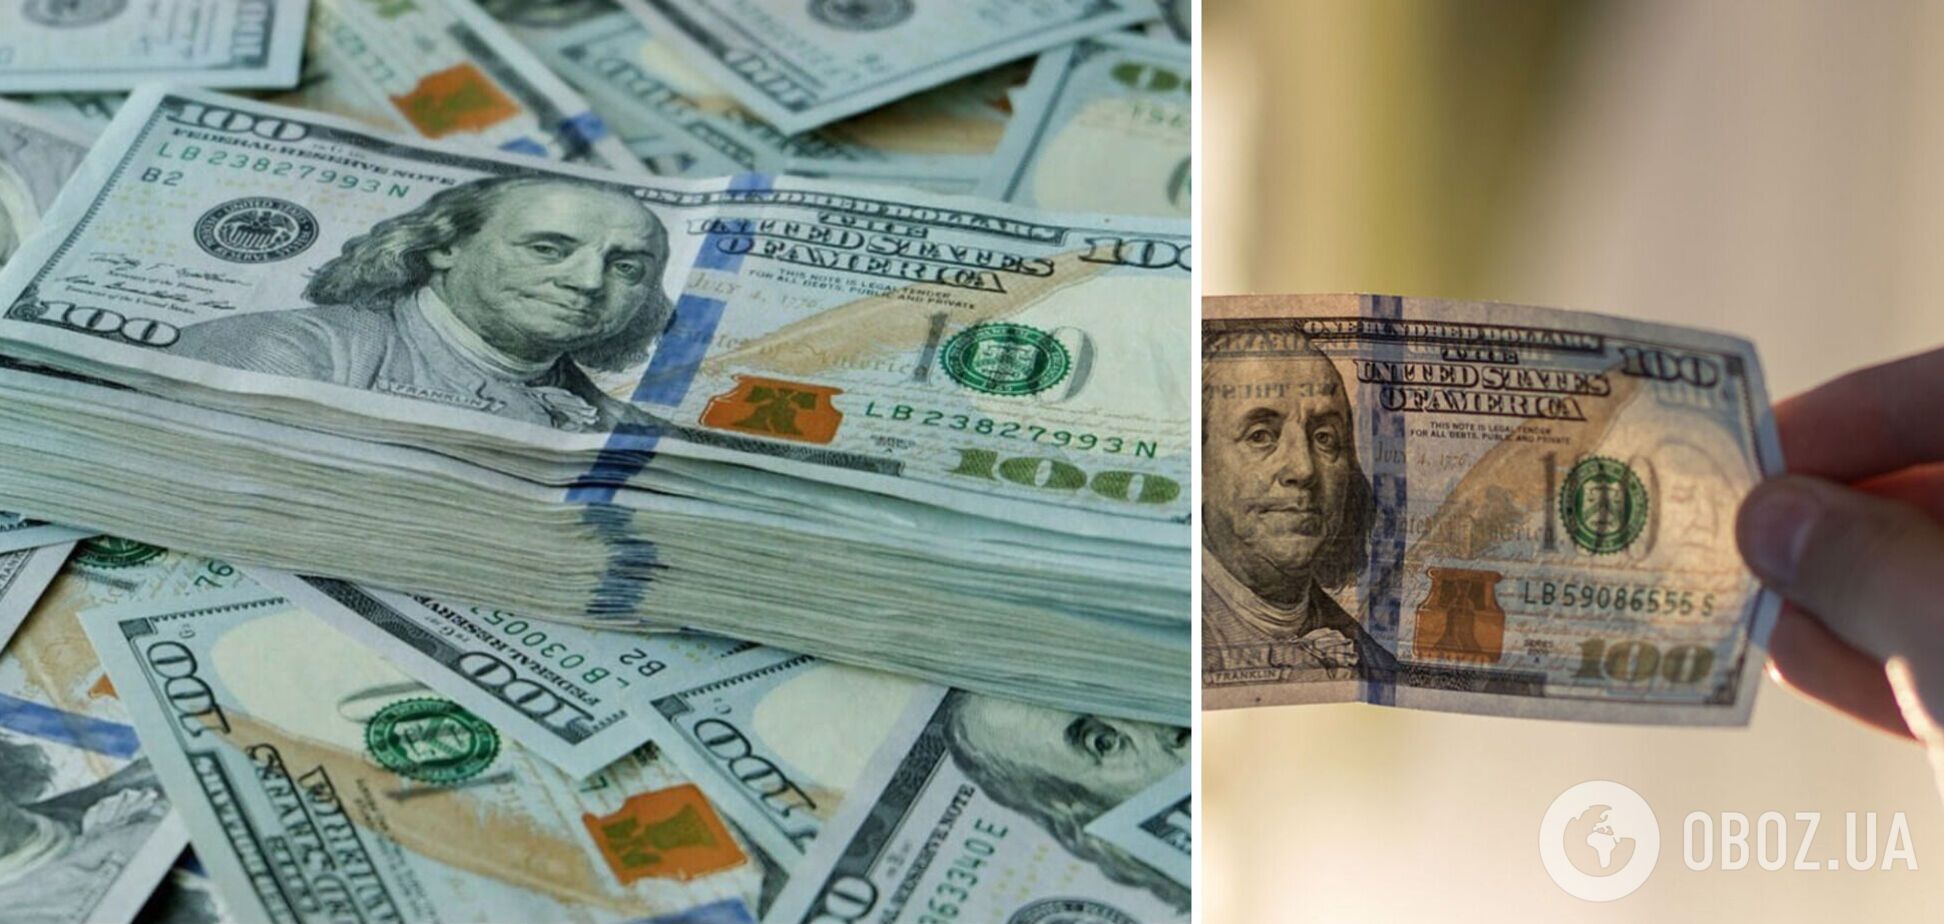 В Украине были замечены фальшивые доллары